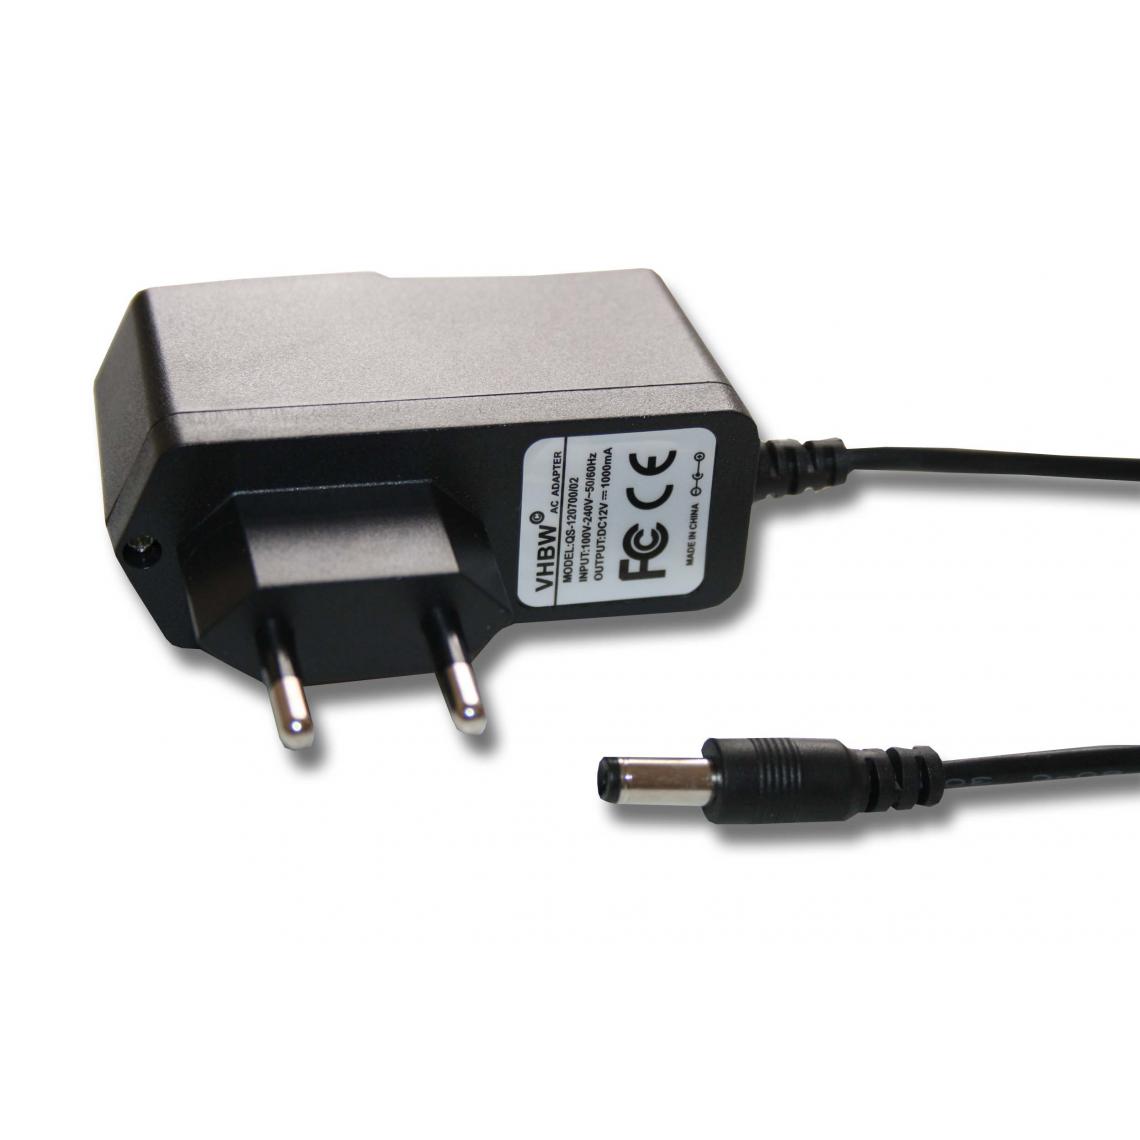 Vhbw - vhbw Câble d'alimentation adaptateur compatible avec Yamaha PSR-413, PSR-A350, PSR-E213, PSR-E223, PSR-E303 piano clavier électrique portable - Autre appareil de mesure